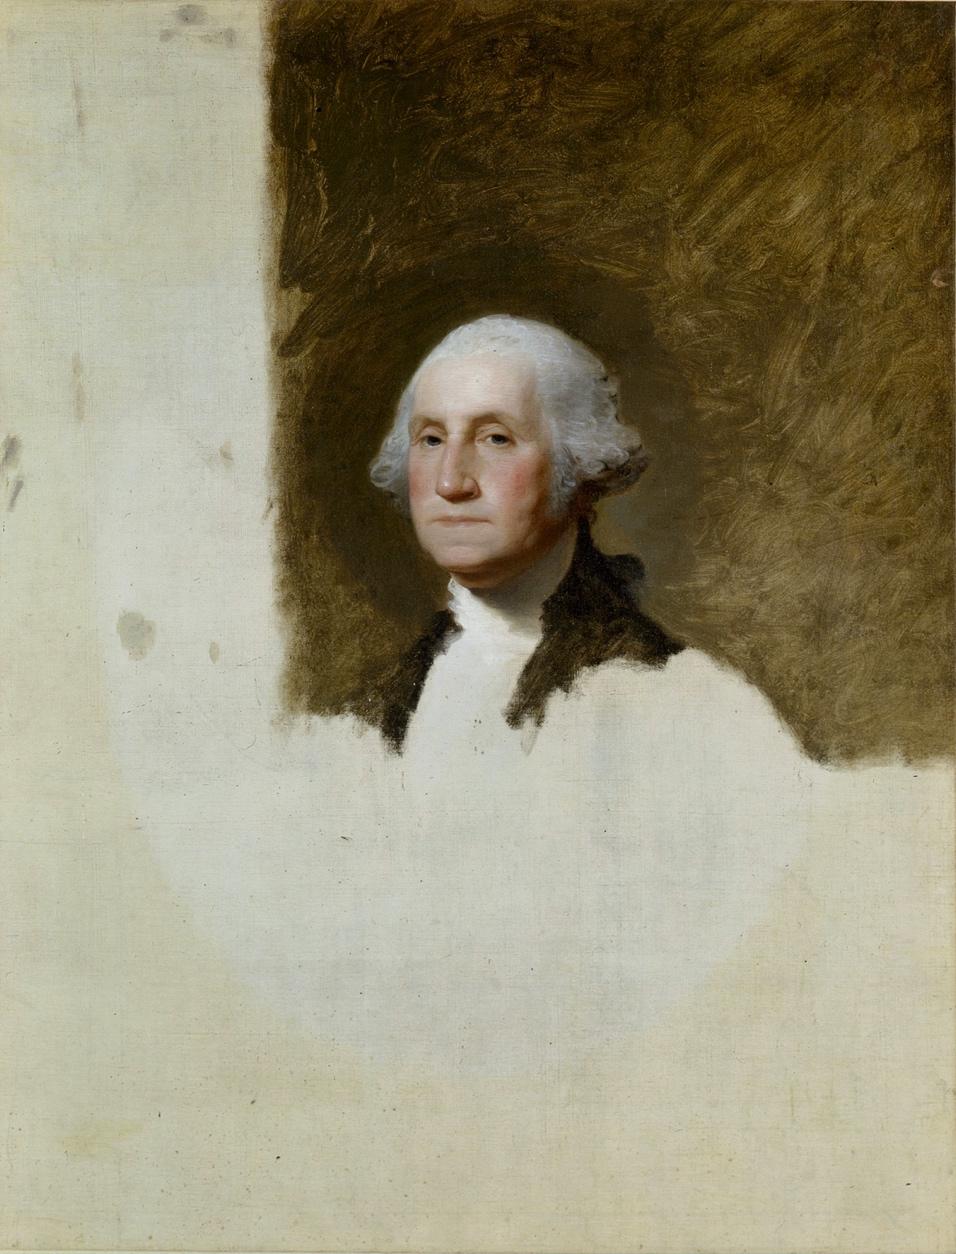 Portrait of George Washington  
(The Athenaeum Portrait)
